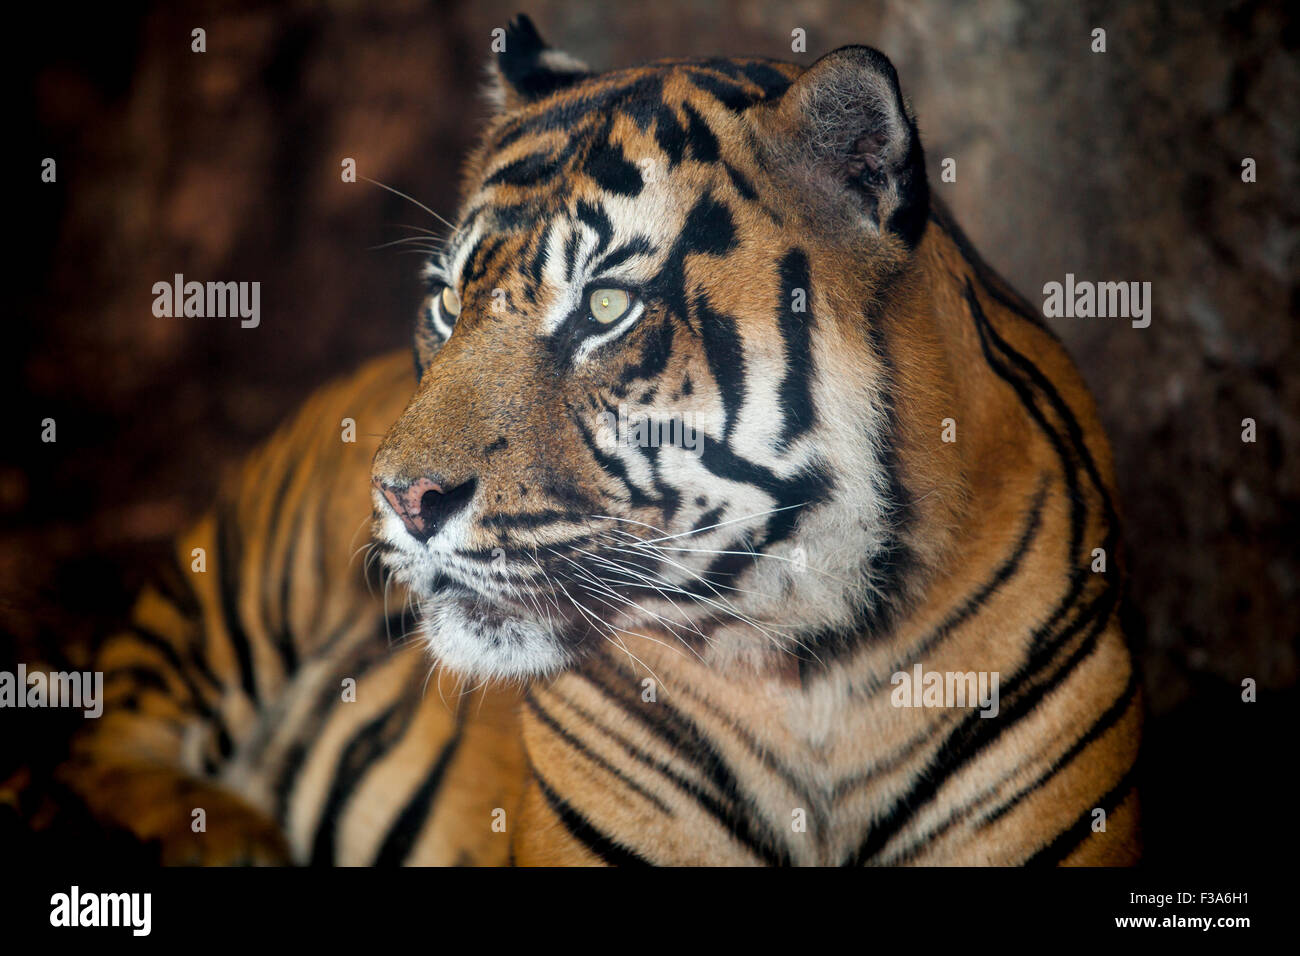 Sumatran tiger or Panthera tigris sumatrae Stock Photo